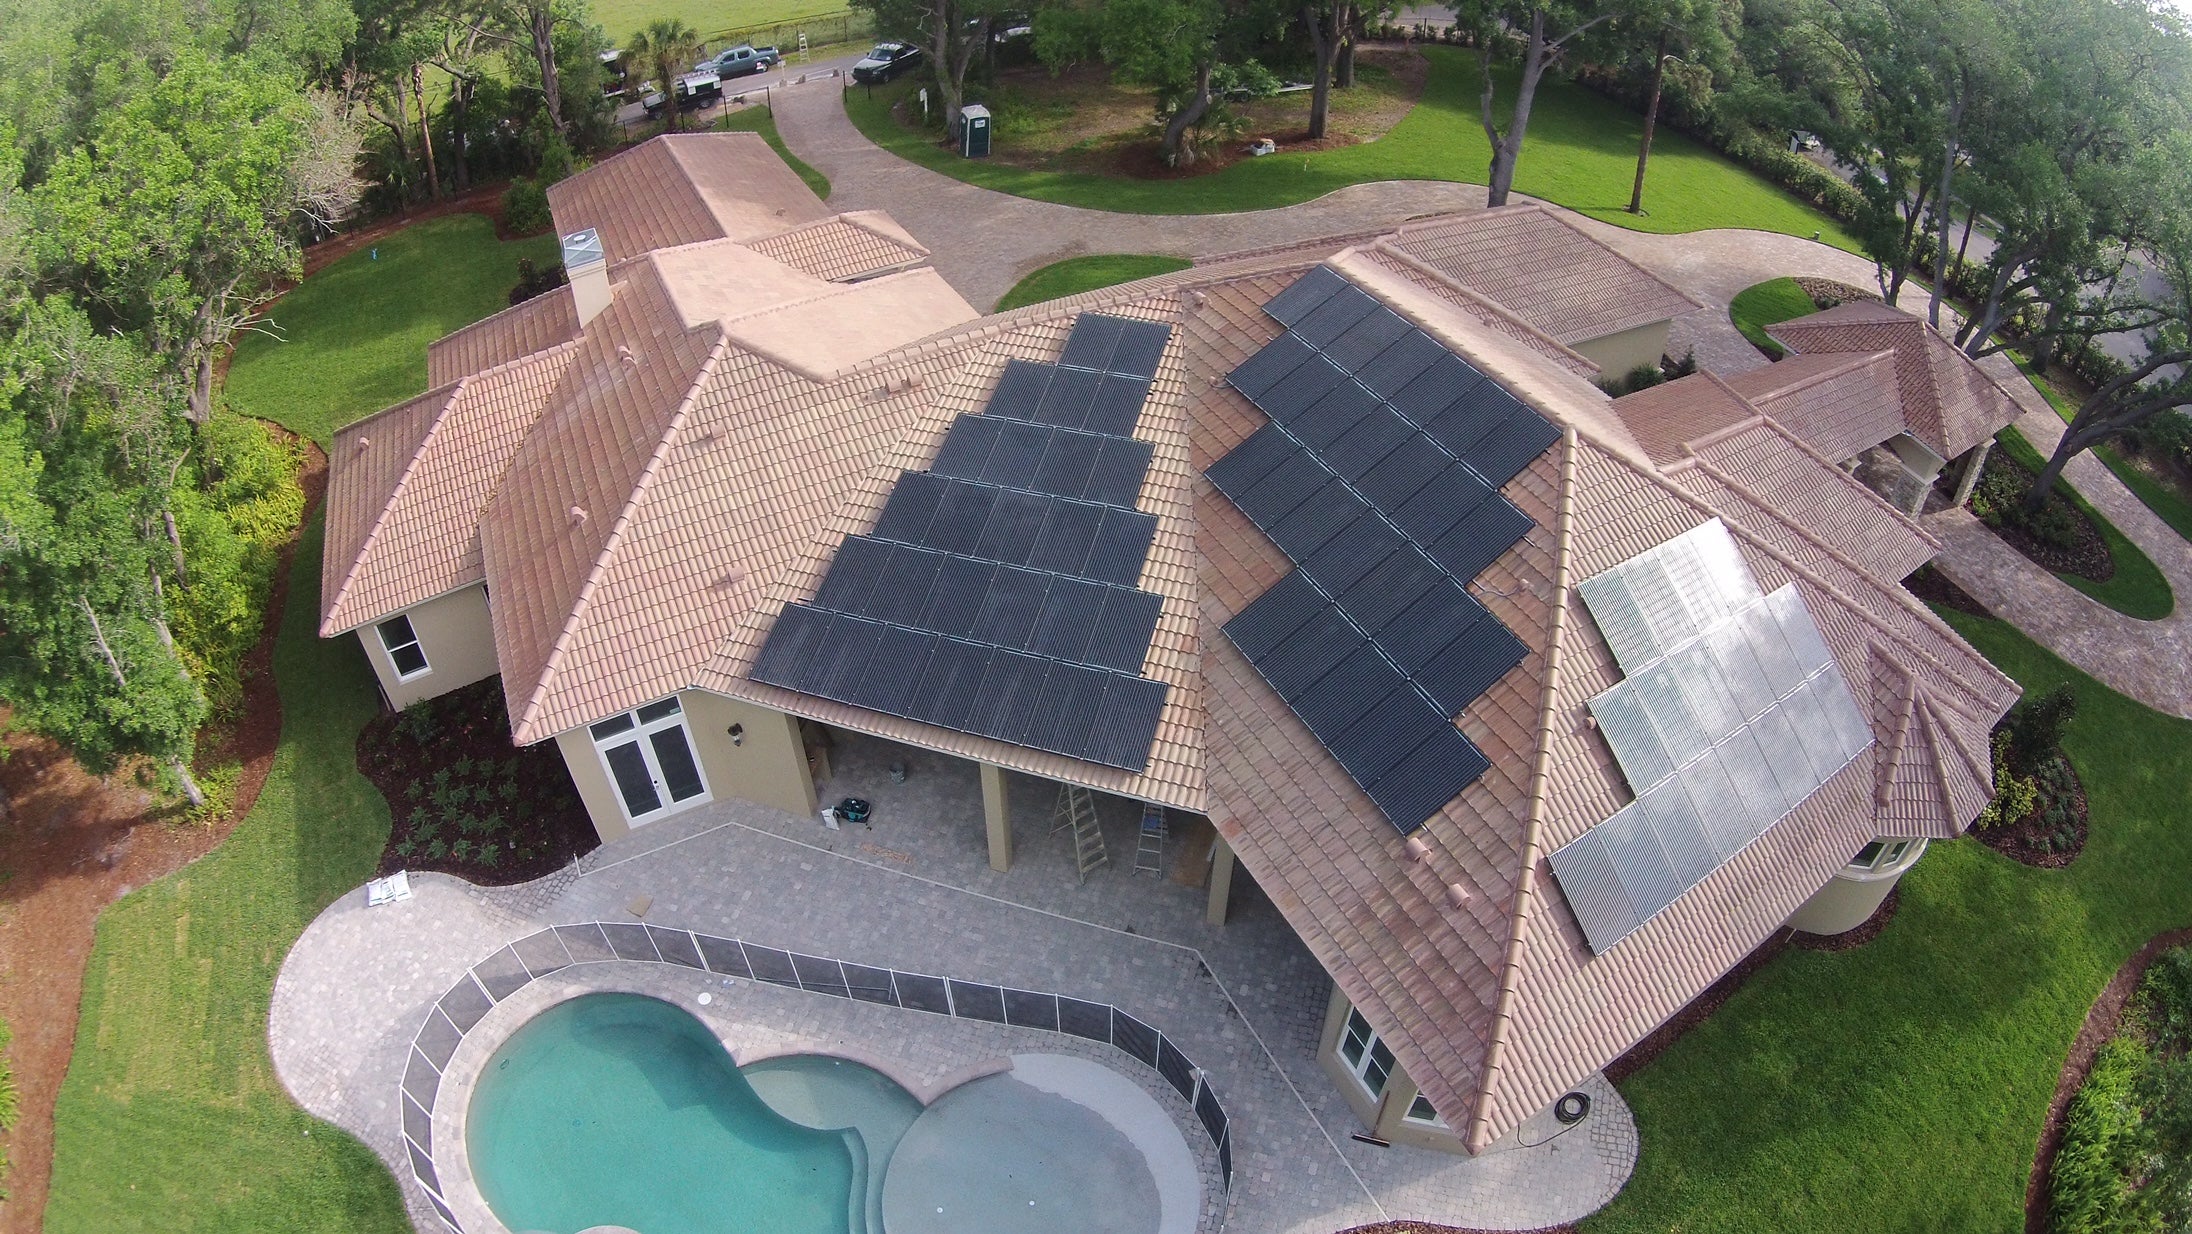 Solar Panels on Tile Roof - SEM